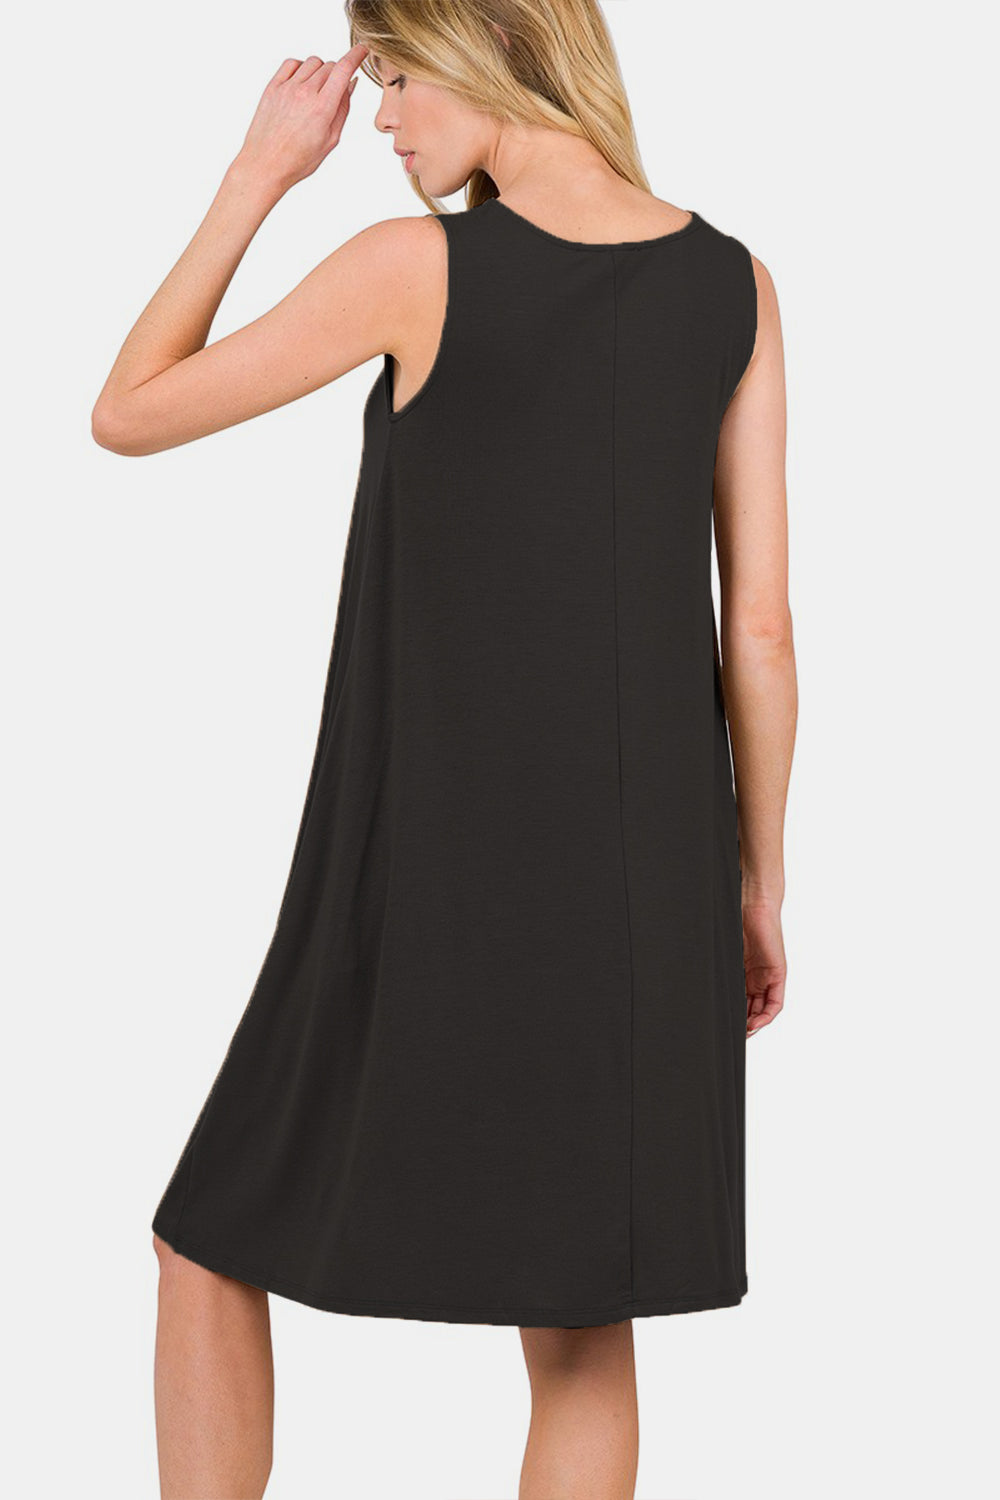 Zenana – Ärmelloses, ausgestelltes Kleid in voller Größe mit Seitentaschen